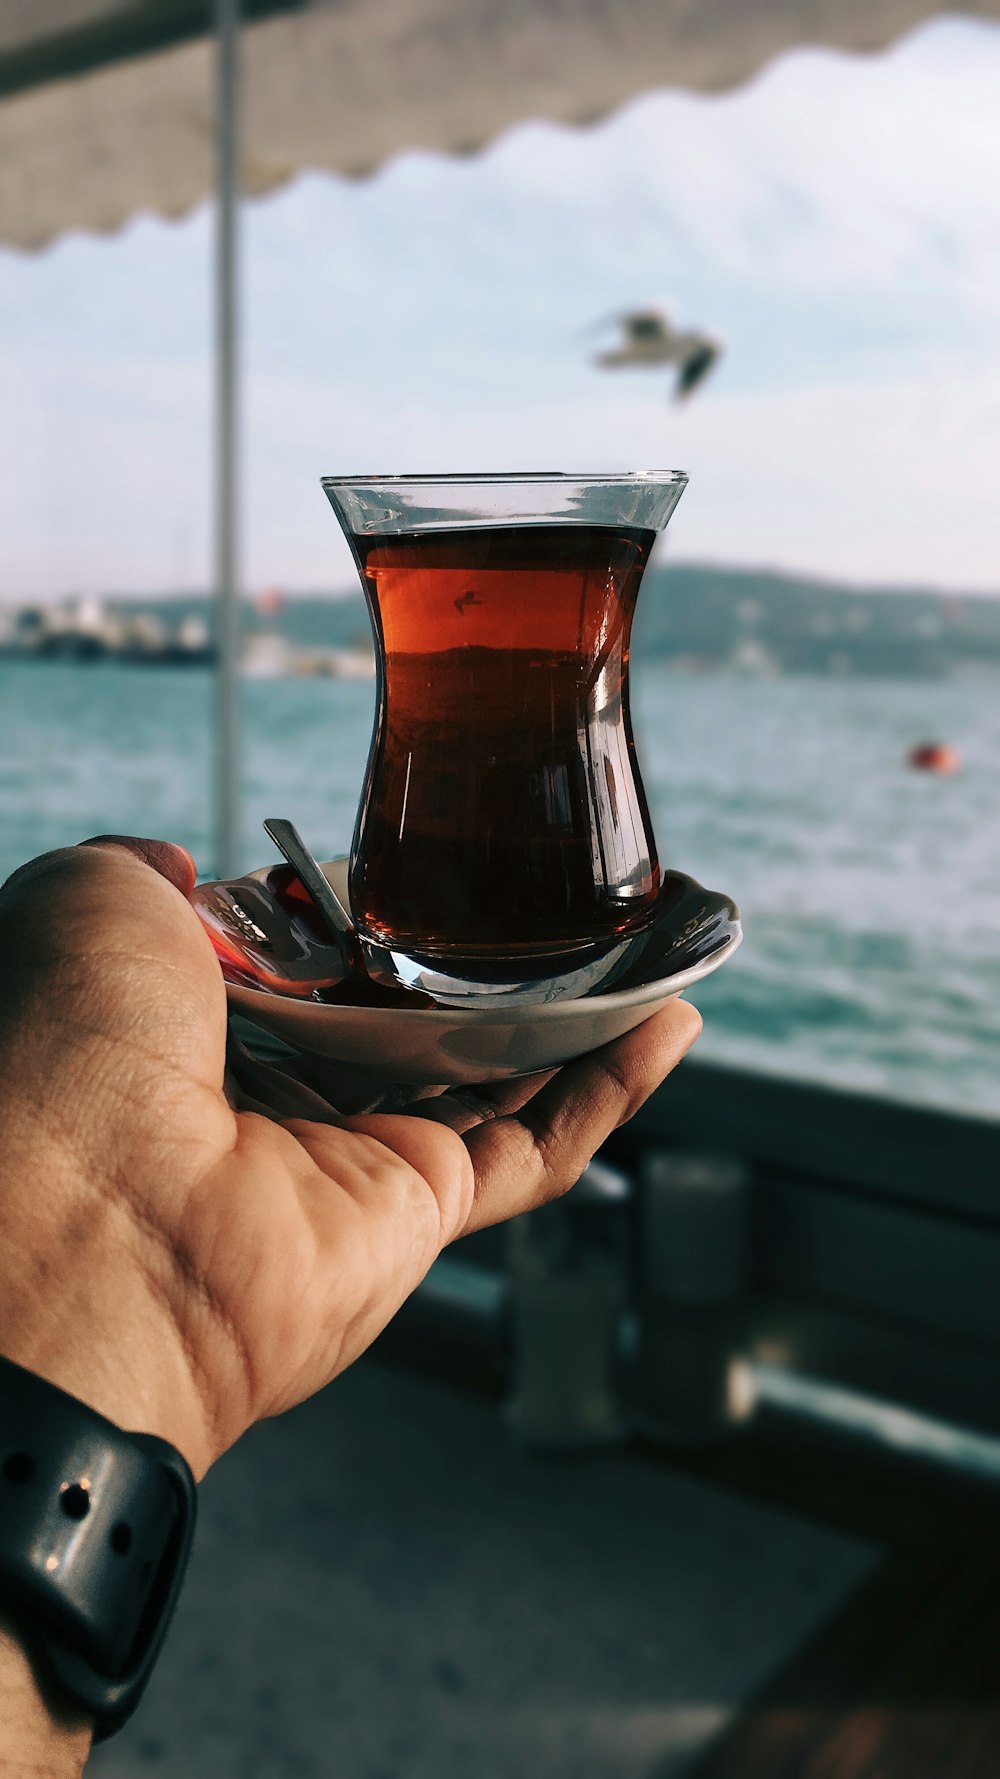 Vaso de té turco en la palma de la mano de la persona